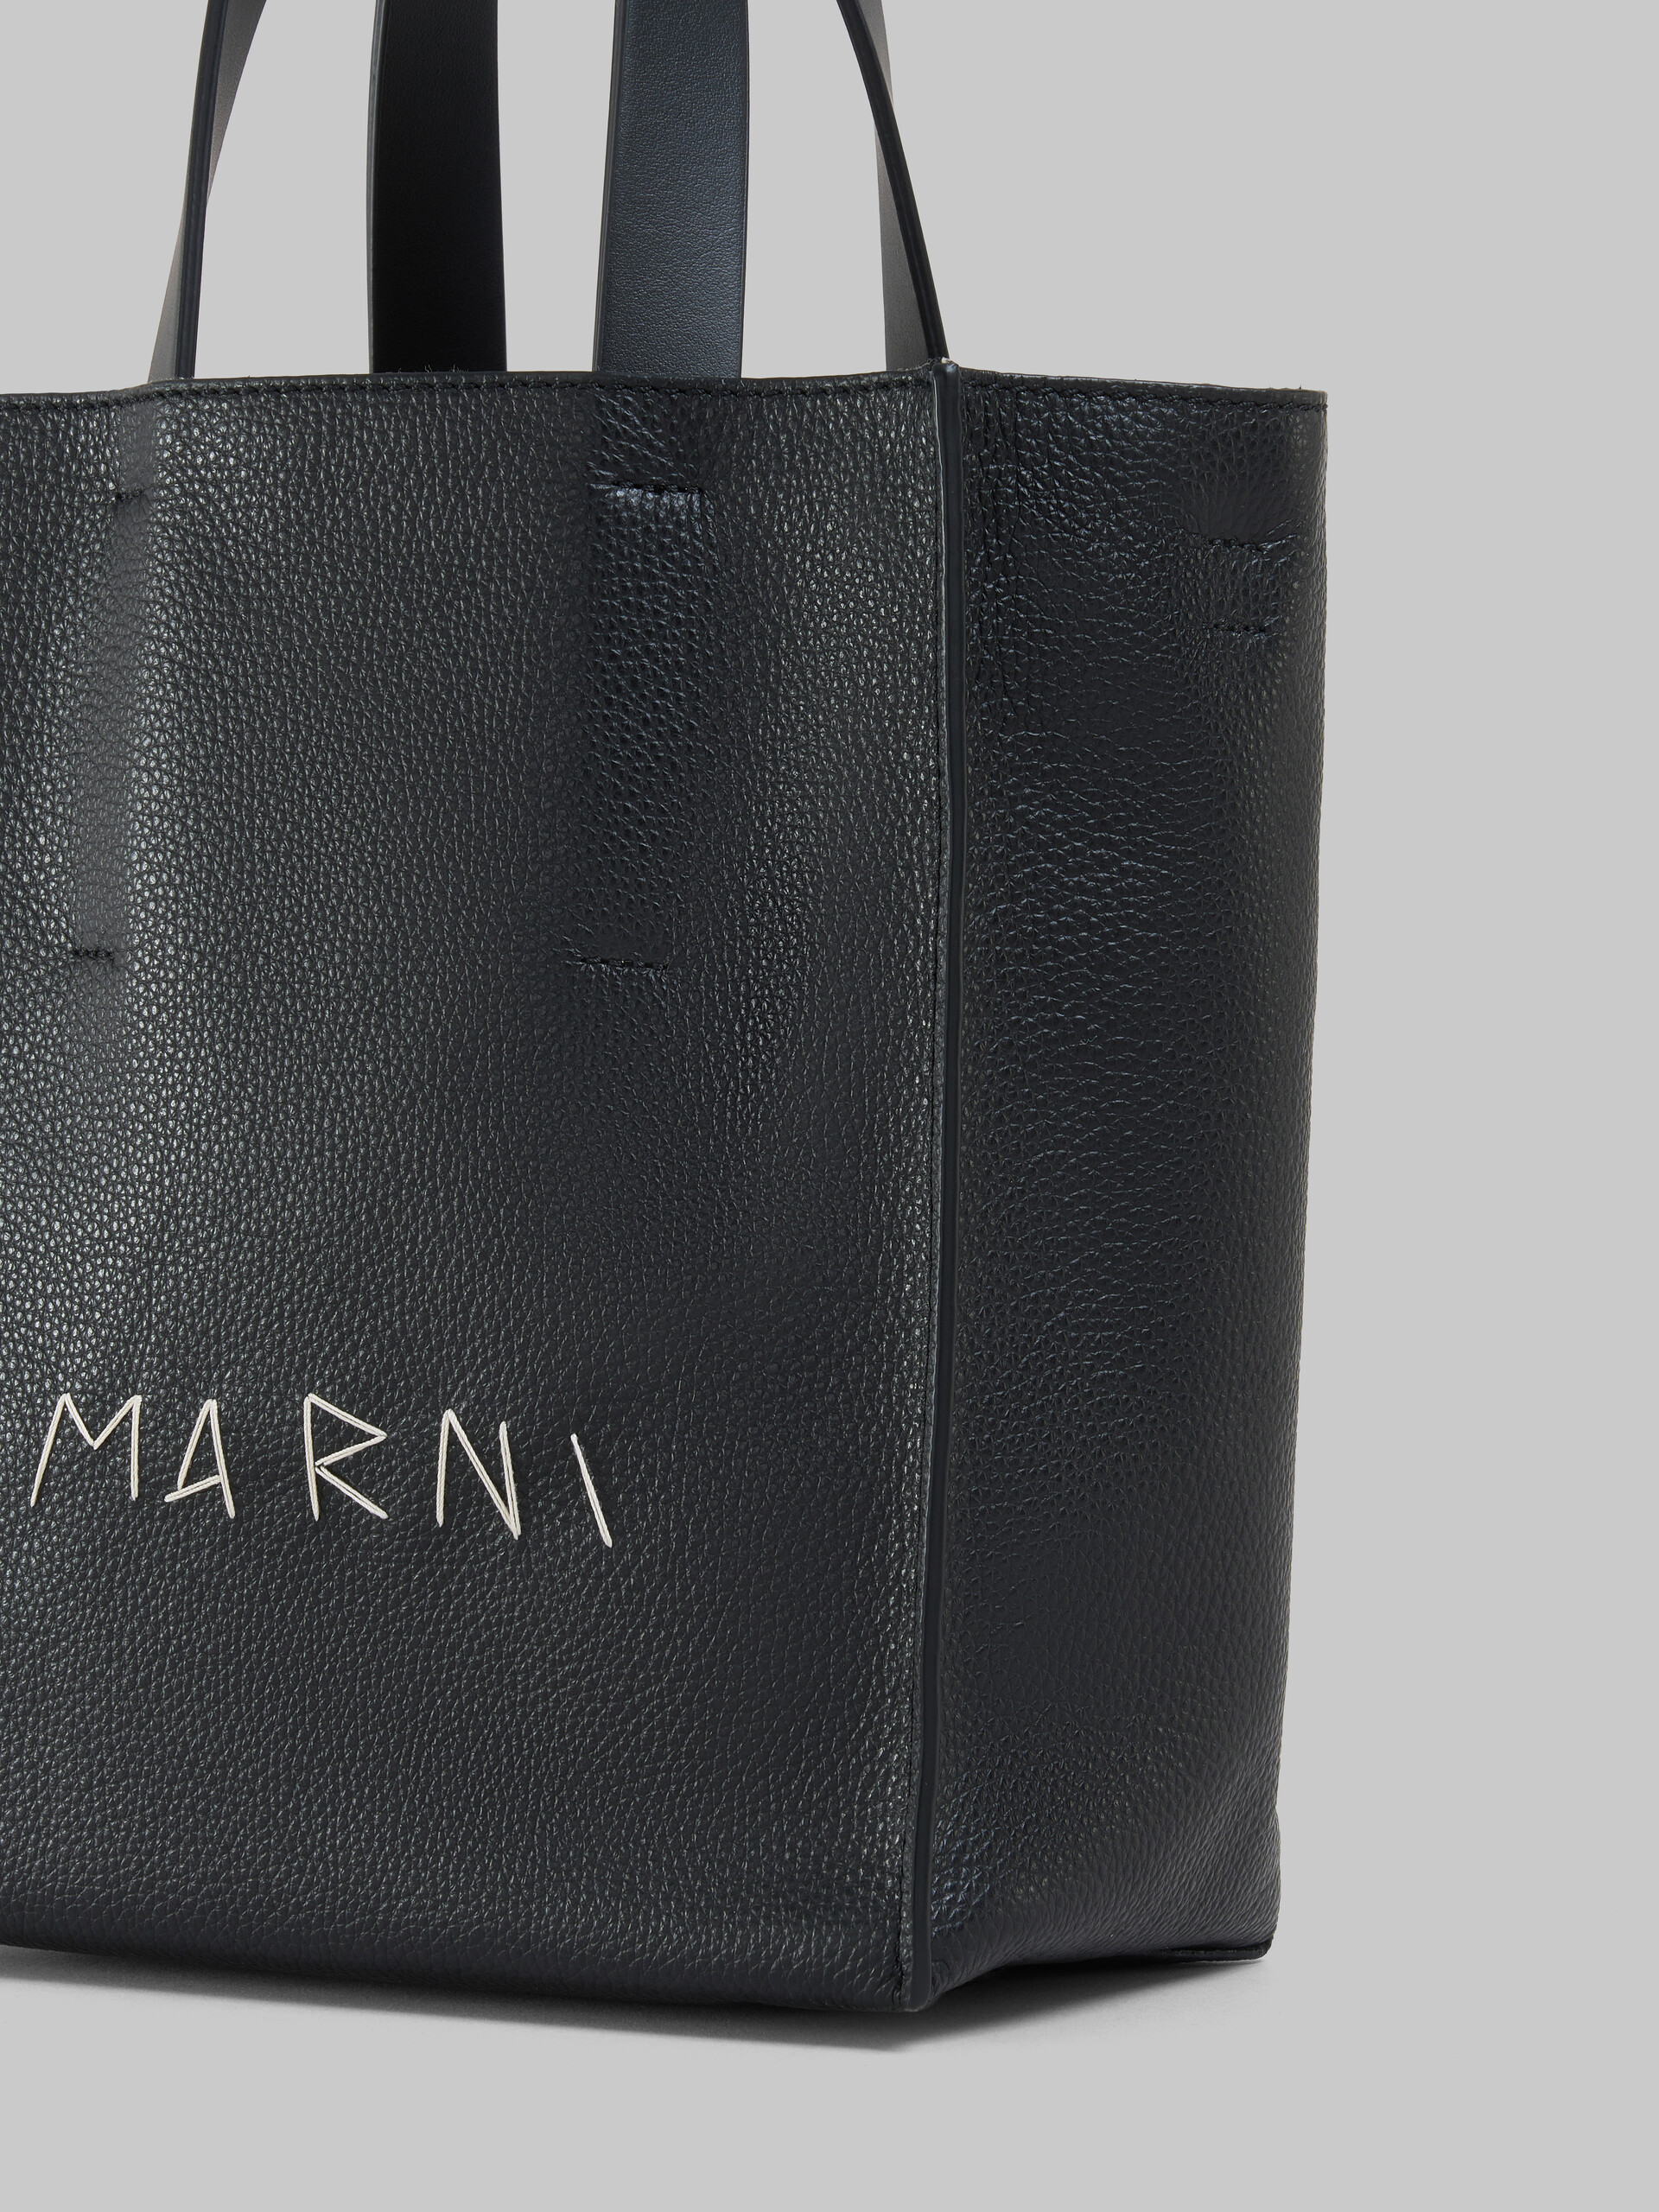 Mini-sac Museo Soft en cuir ivoire et marron avec effet raccommodé Marni - Sacs cabas - Image 5